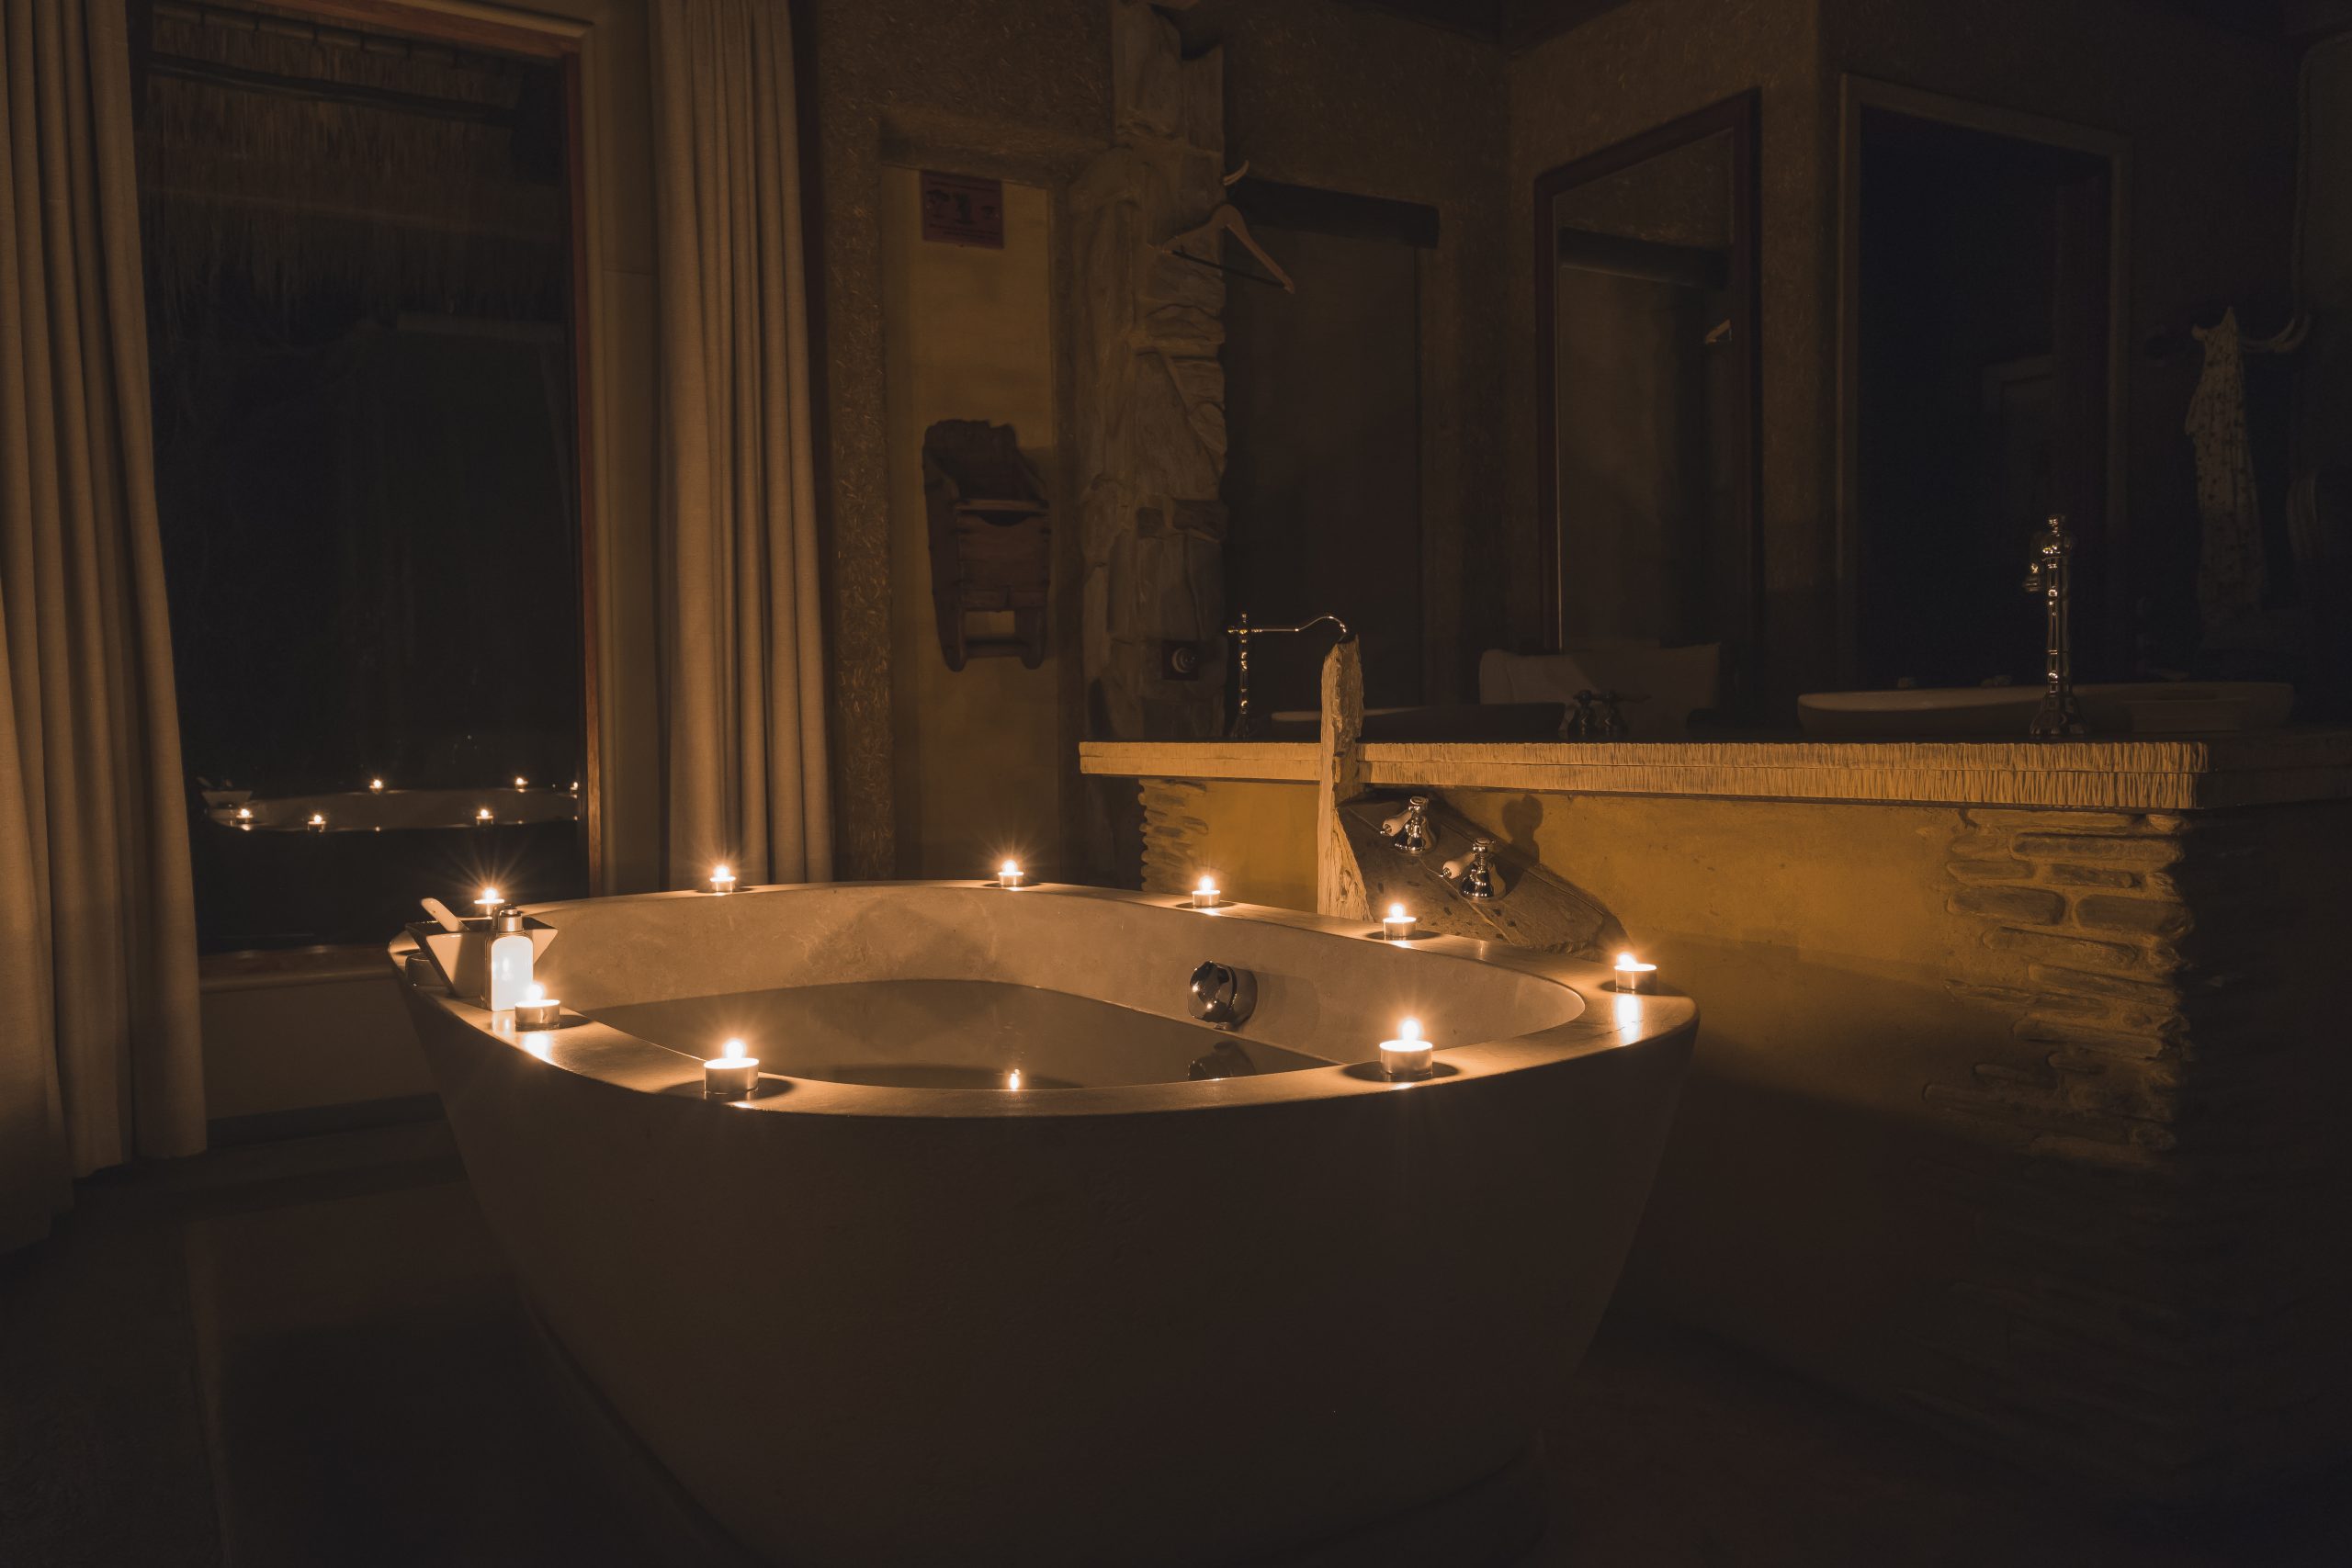 Jabulani Suite Interior - Bathtub by candlelight